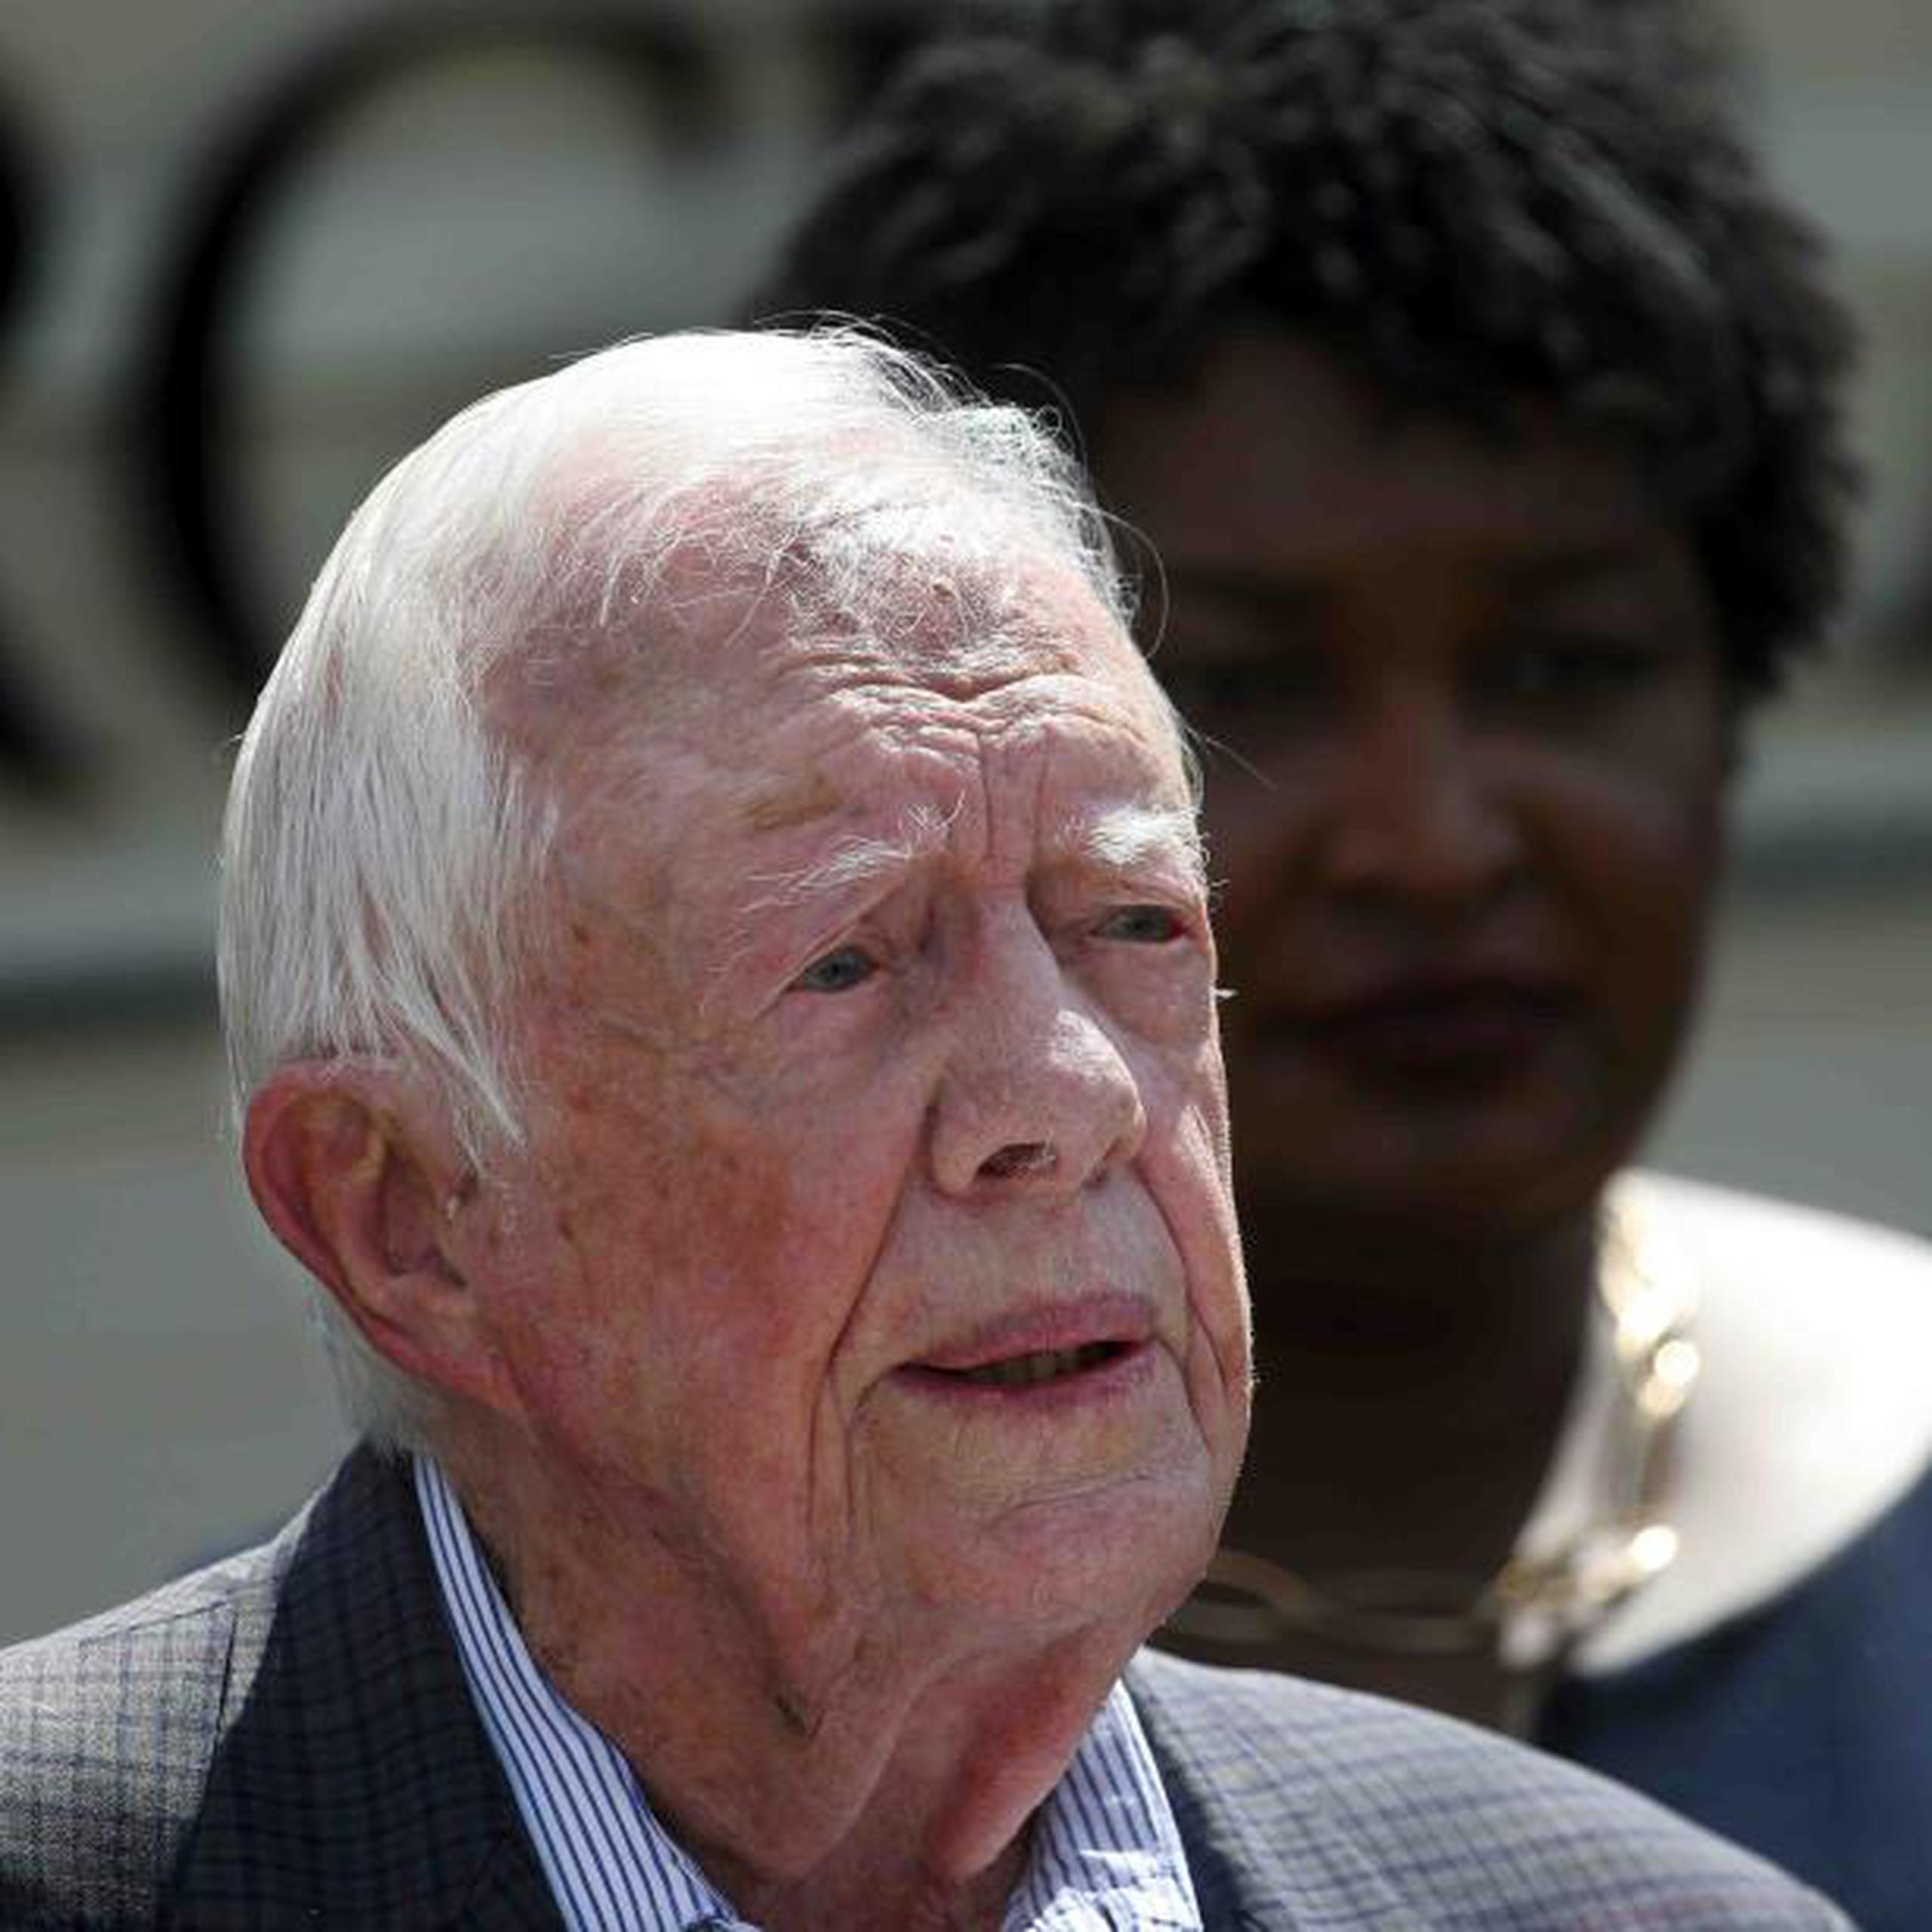 Este viernes, Jimmy Carter cumplió 94 y 172 días, superando en un día la vida del expresidente George H.W. Bush, quien murió el 30 de noviembre a la edad de 94 años y 171 días. (AP / John Bazemore)